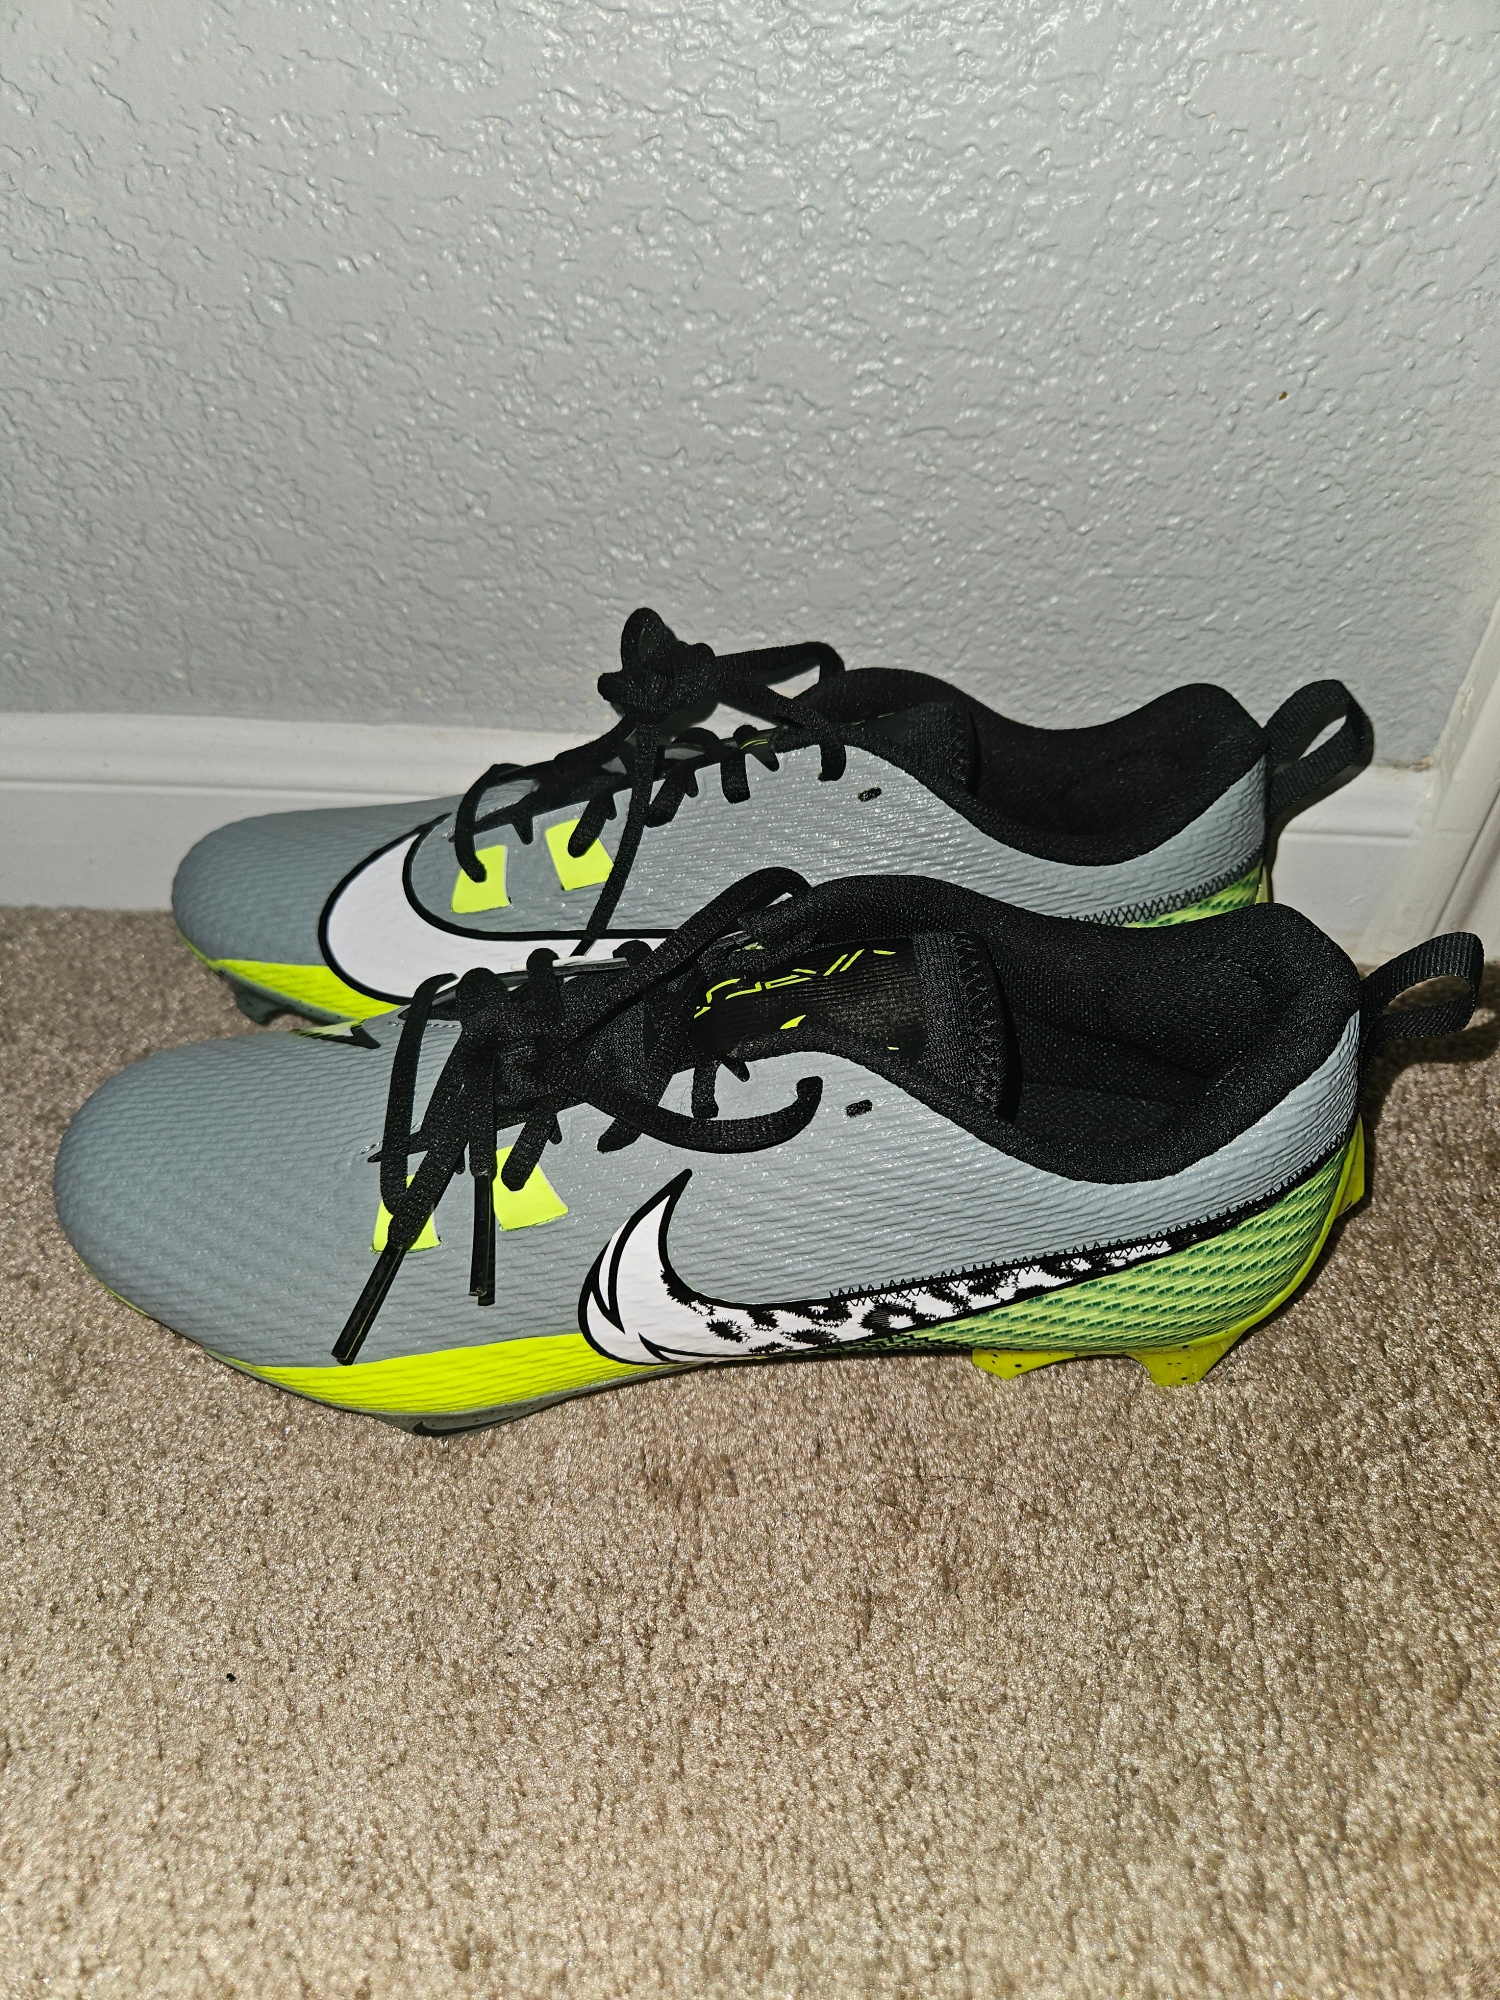 Nike Vapor Edge Speed 360 2 Volt Grey Football Cleats Men's Size 11.5 FB8446-303